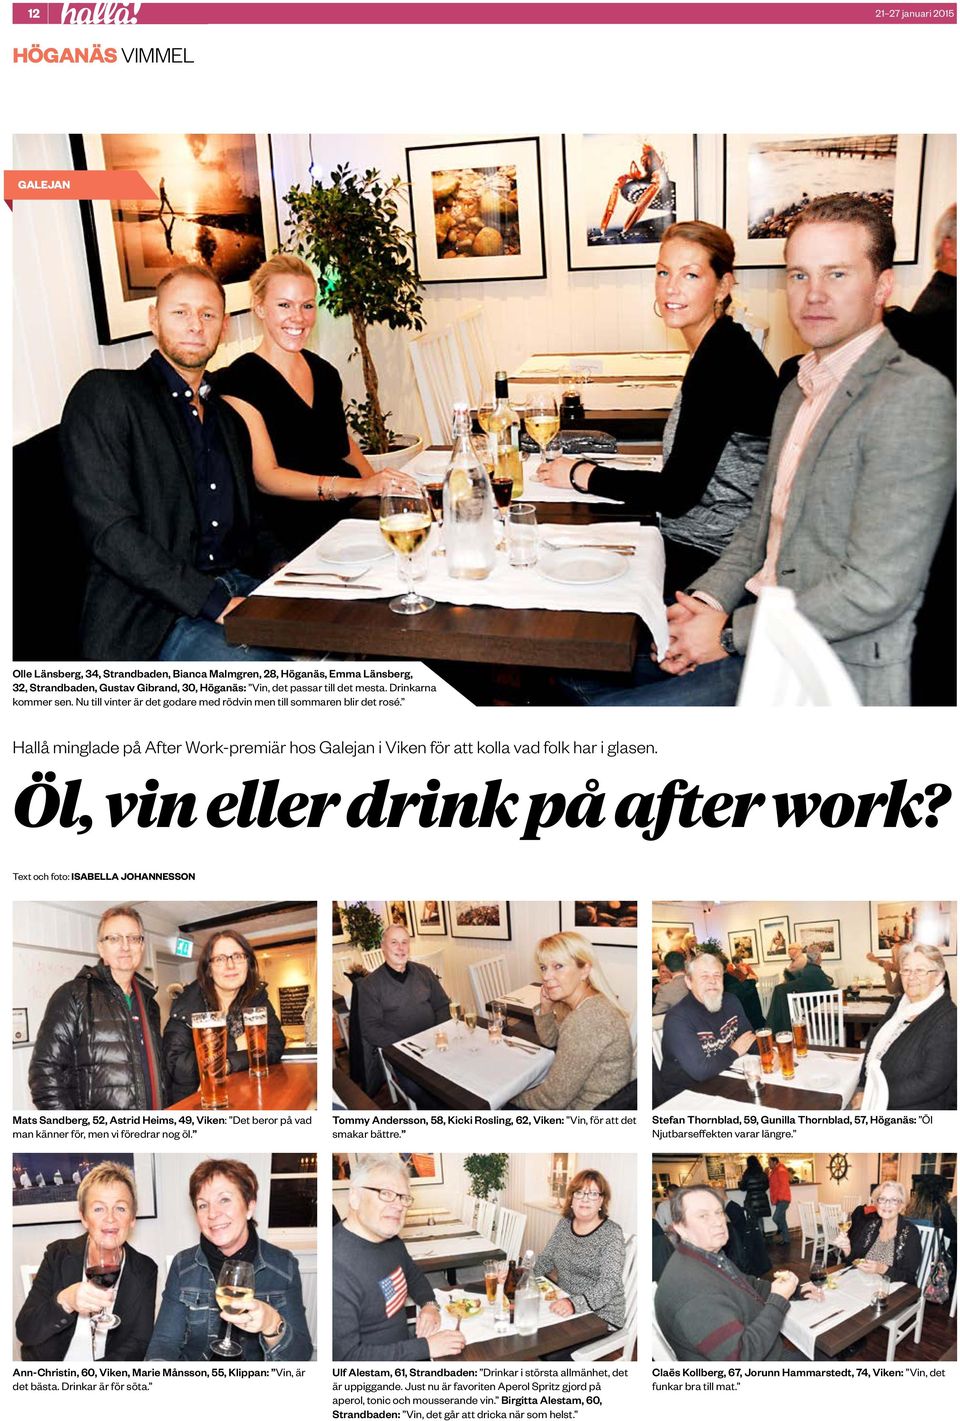 Öl, vin eller drink på after work? Text och foto: ISABELLA JOHANNESSON Mats Sandberg, 52, Astrid Heims, 49, Viken: Det beror på vad man känner för, men vi föredrar nog öl.